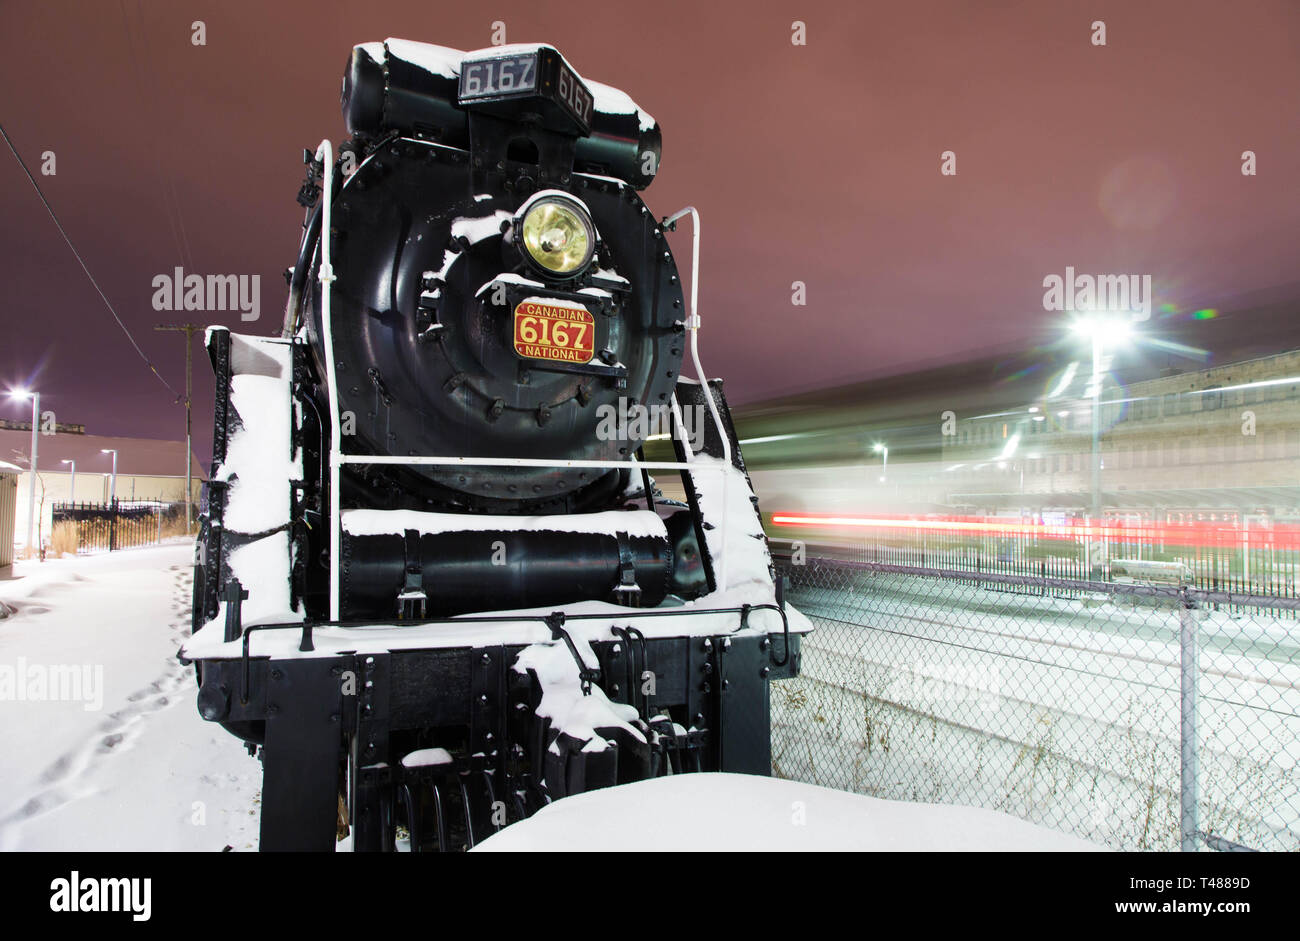 Train du canadien national Guelph Kitchener Waterloo Ontario locomotive à vapeur de banlieue de GO Transit passager d'affichage statique exposition neige station Banque D'Images